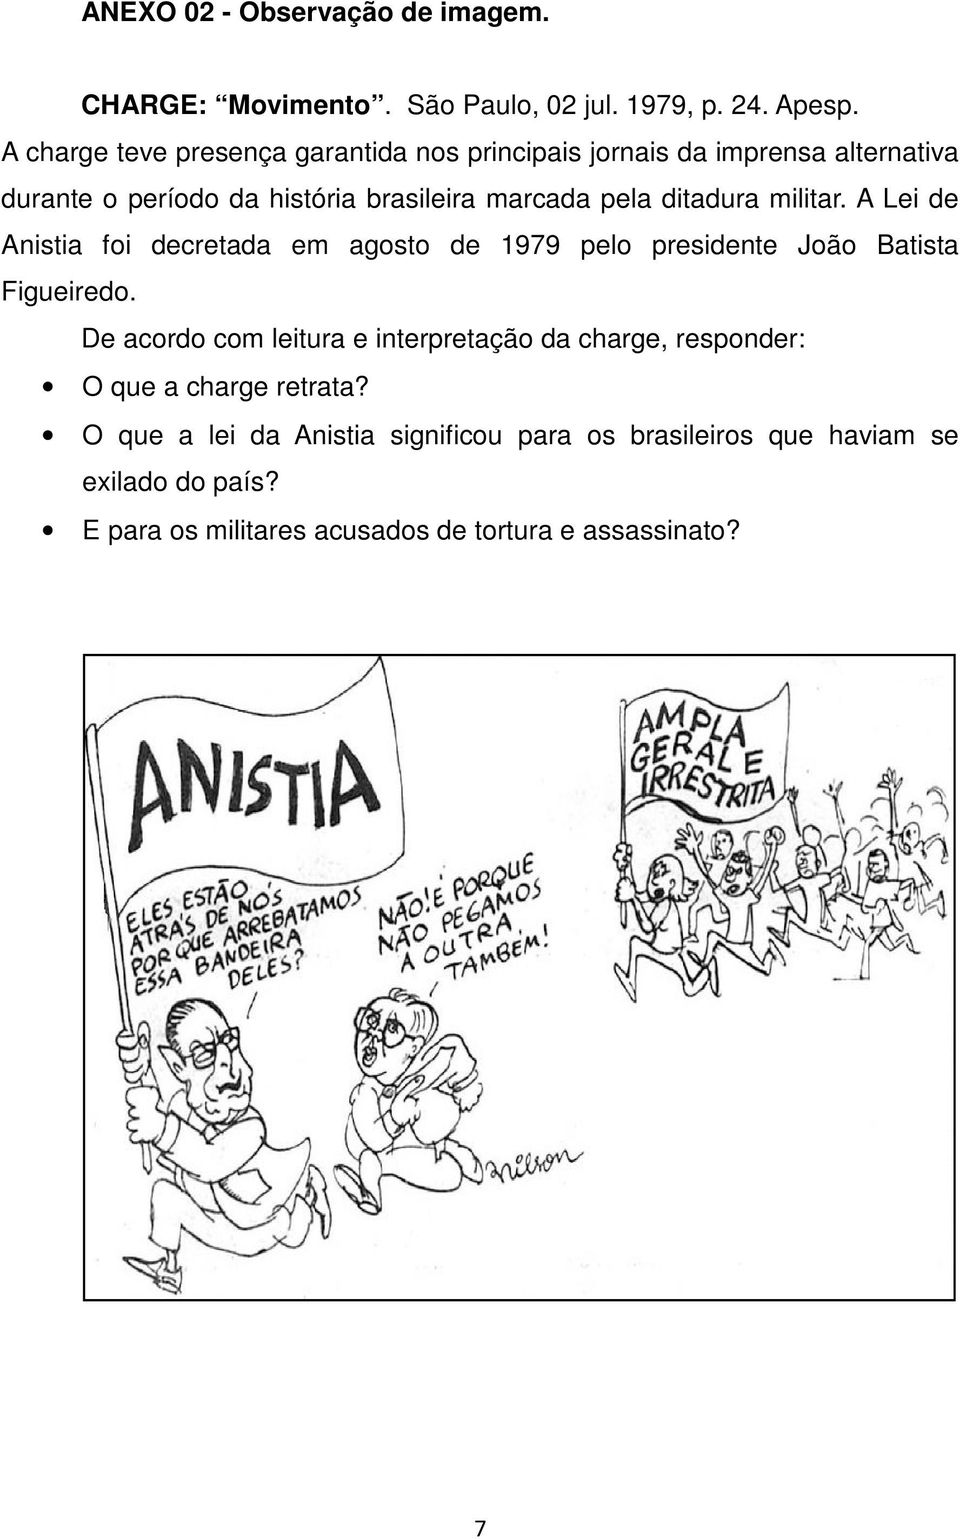 ditadura militar. A Lei de Anistia foi decretada em agosto de 1979 pelo presidente João Batista Figueiredo.